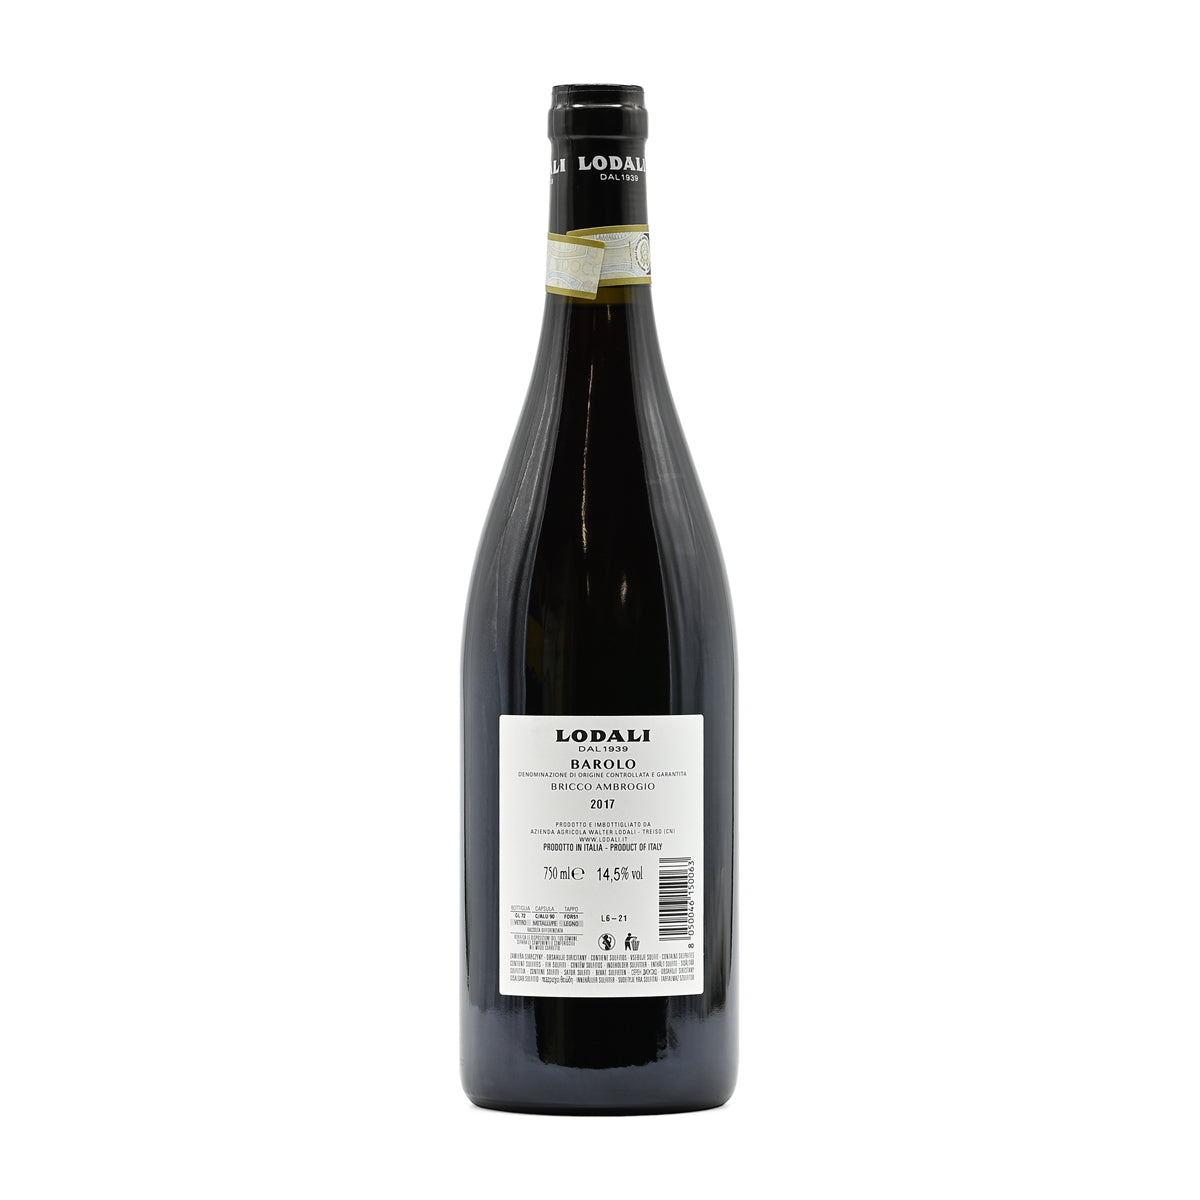 Lodali Barolo Bricco Ambrogio 2017, 750ml Italian red wine, made from Nebbiolo, from Barolo, Piedmont, Italy – GDV Fine Wines, Hong Kong